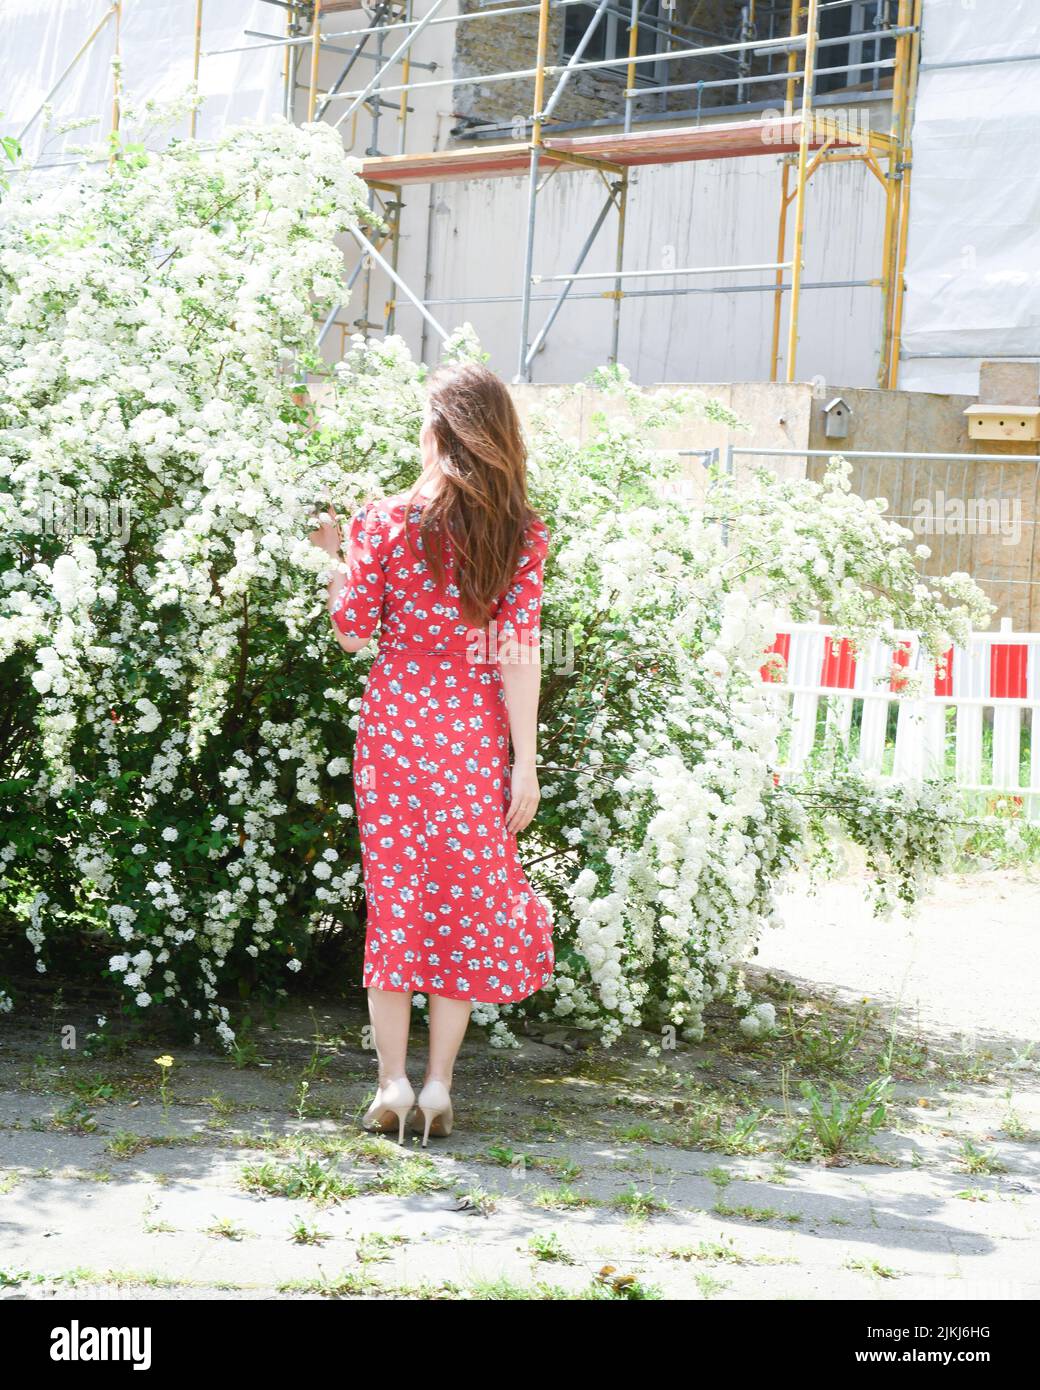 mujer, vista trasera, vestido rojo, irreconocible, flores, casquillos Foto de stock